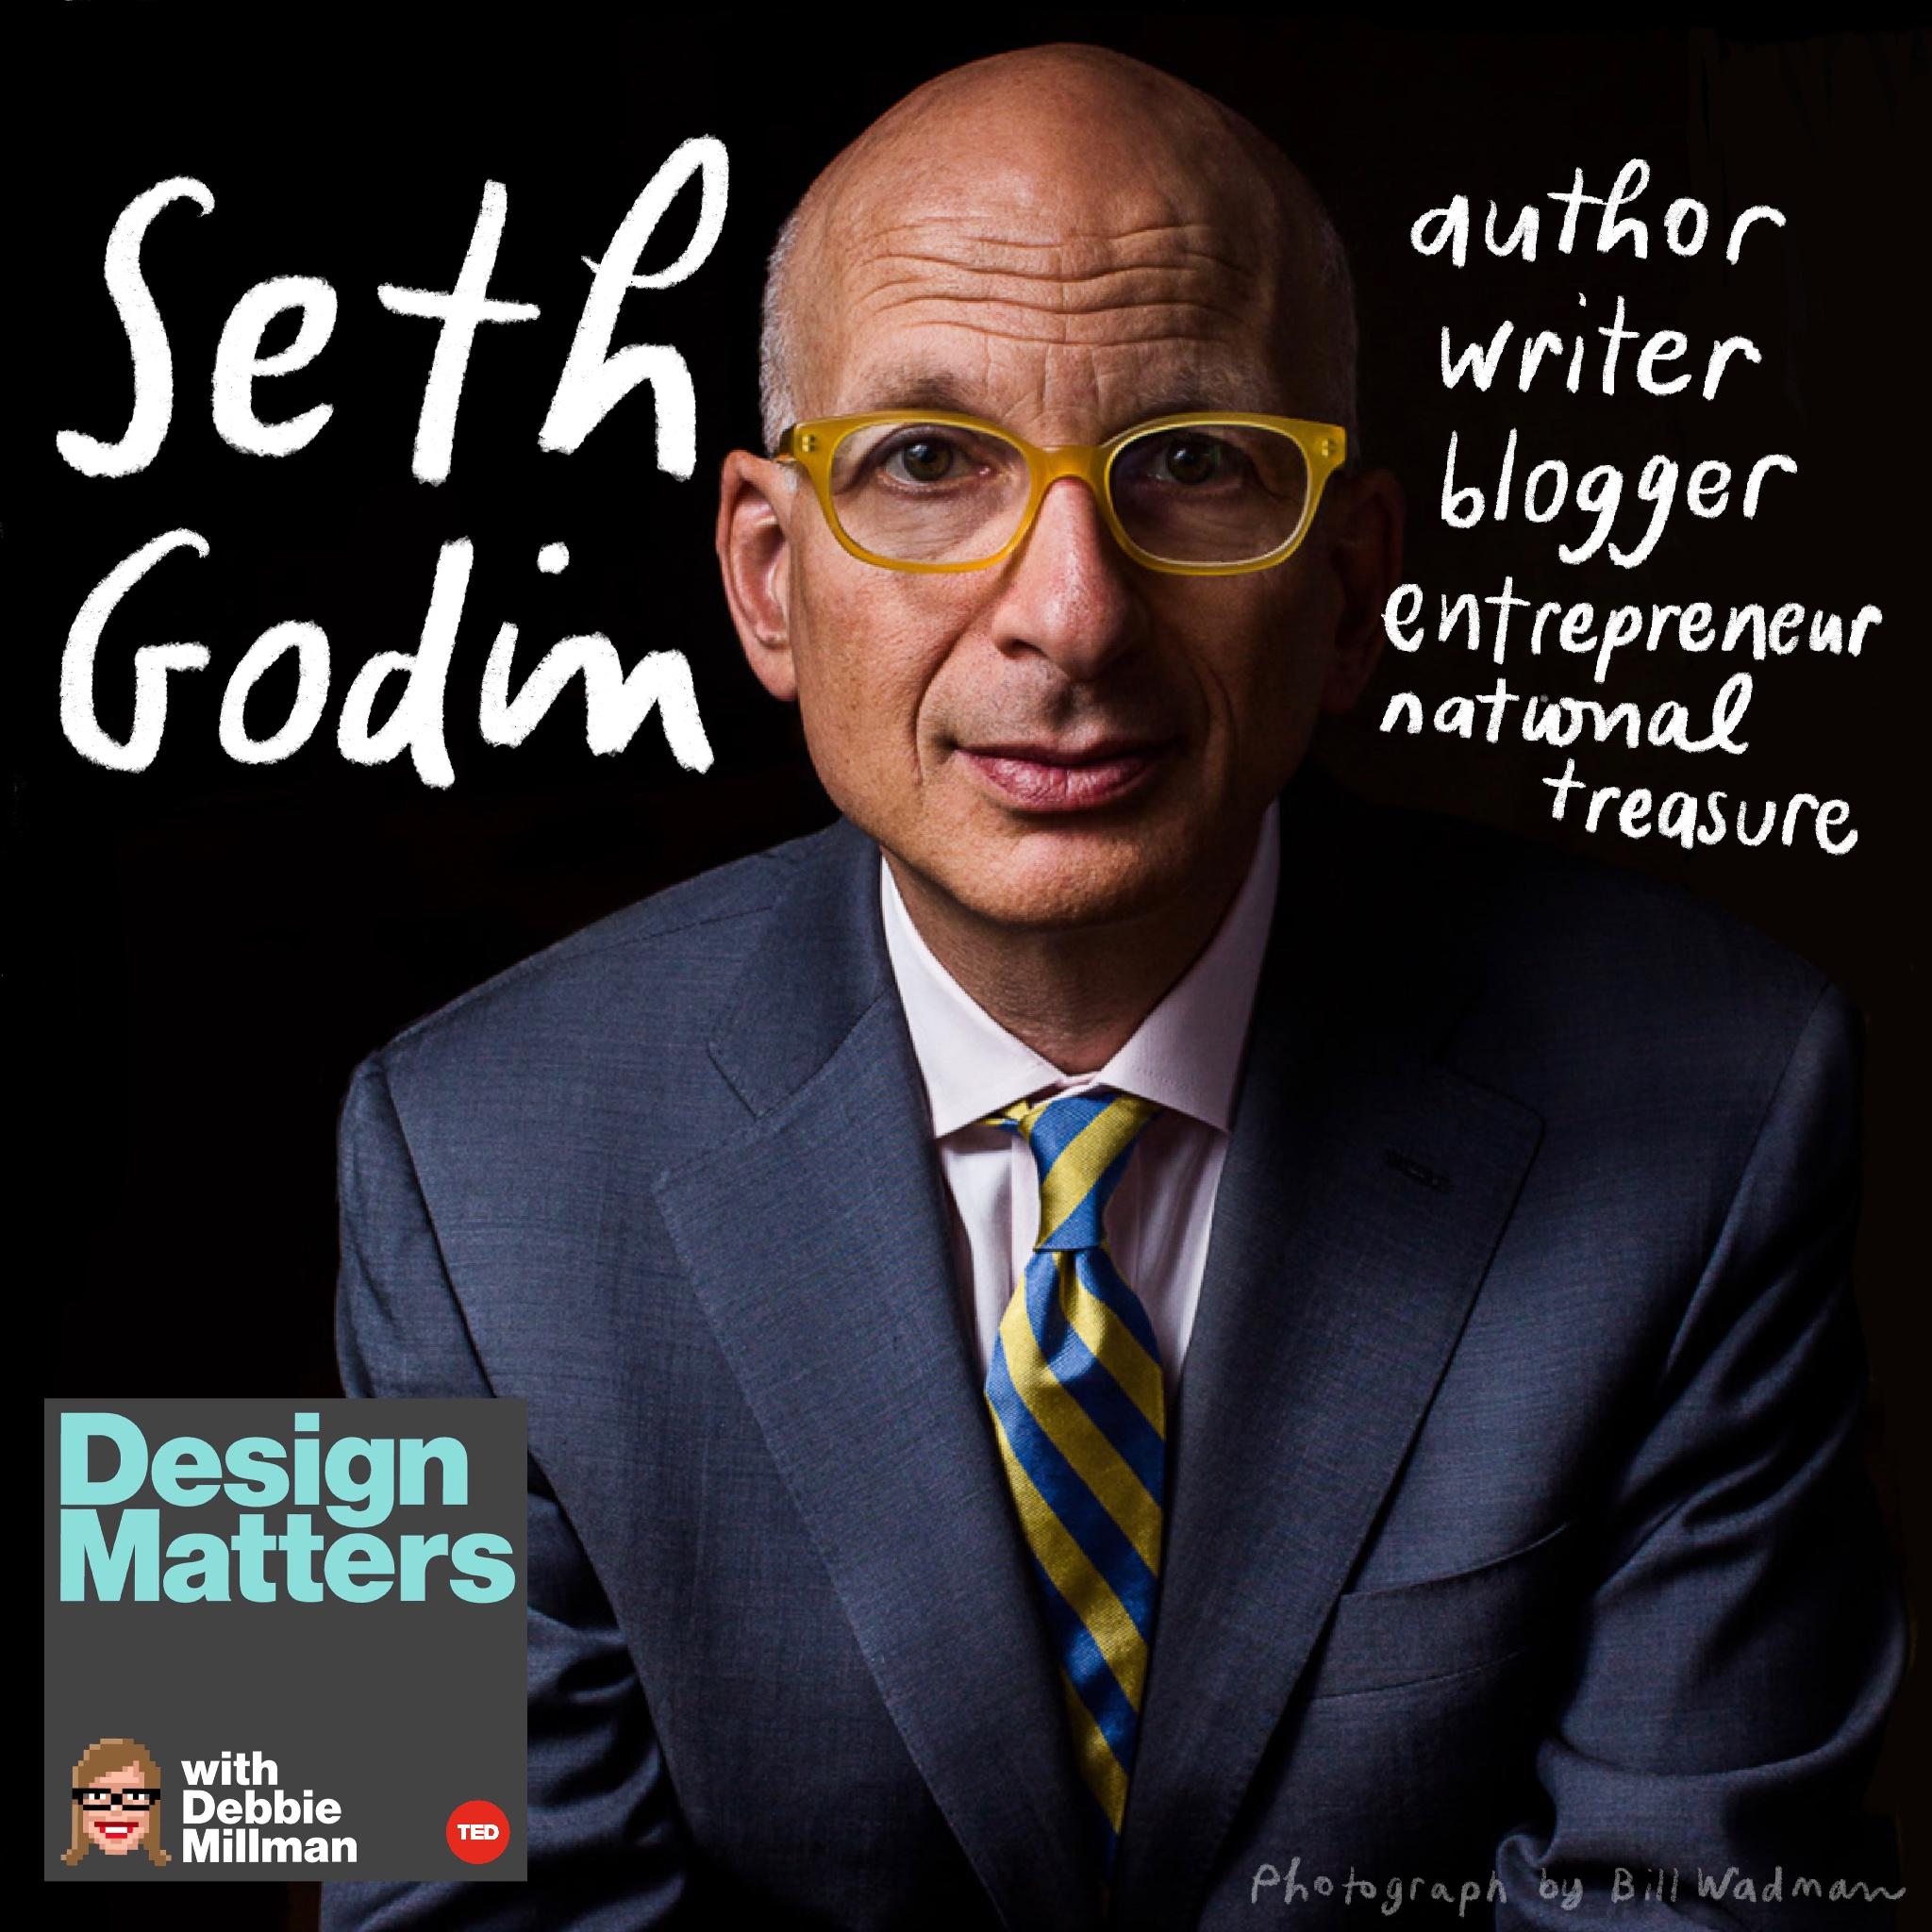 Thumbnail for "Seth Godin".